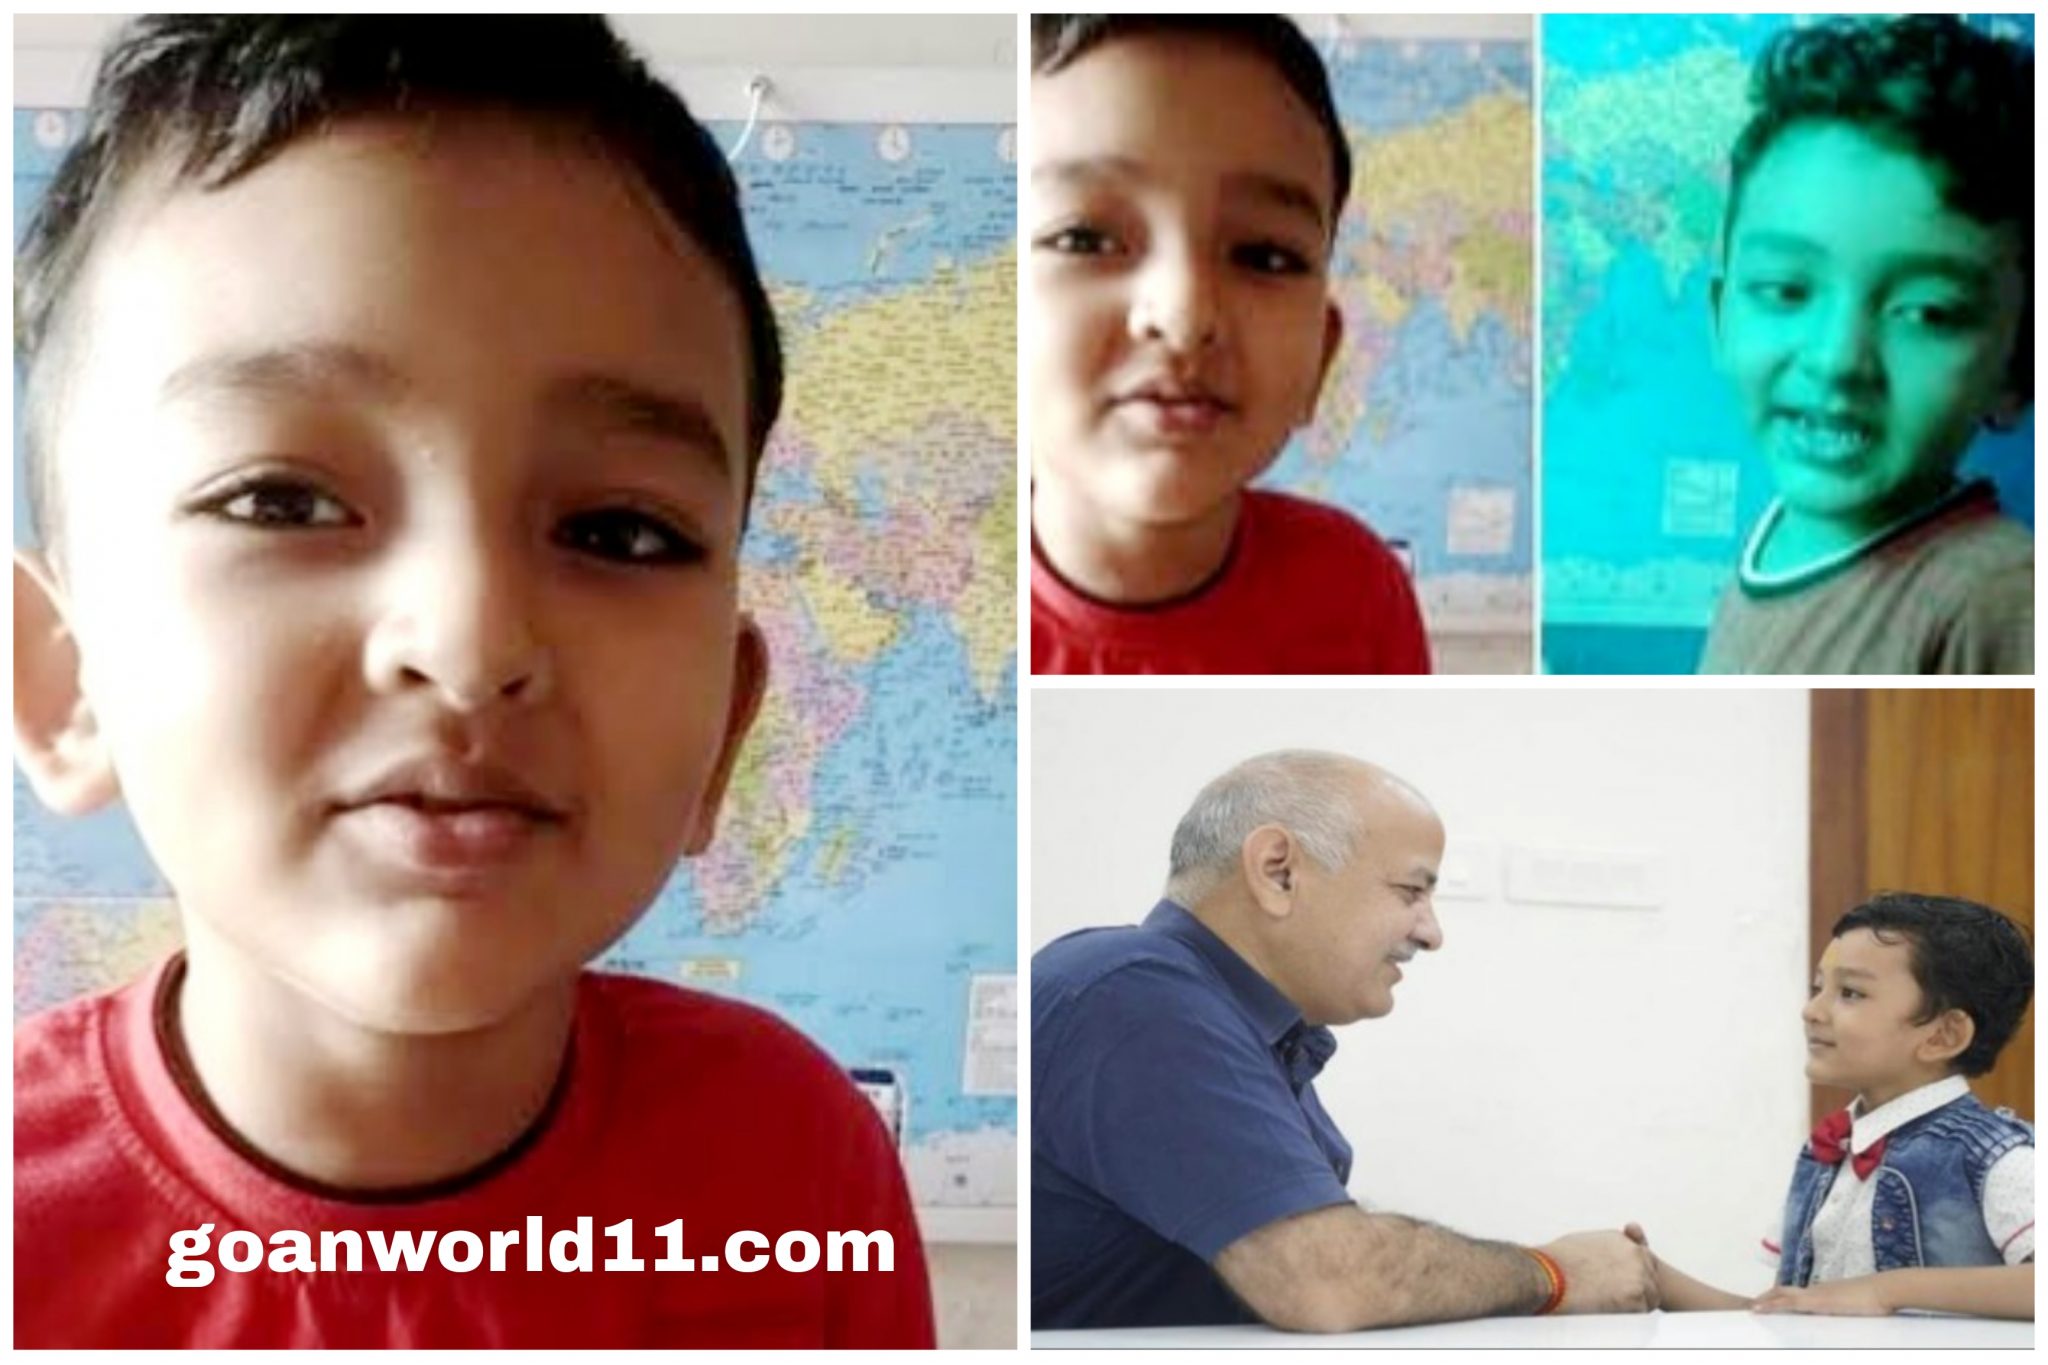 गूगल जैसा तेज दिमाग है इस 5 वर्ष के बच्चे का, संस्कृत के श्लोक समेत शिव तांडव स्तोत्र कर लिया मुखपाठ